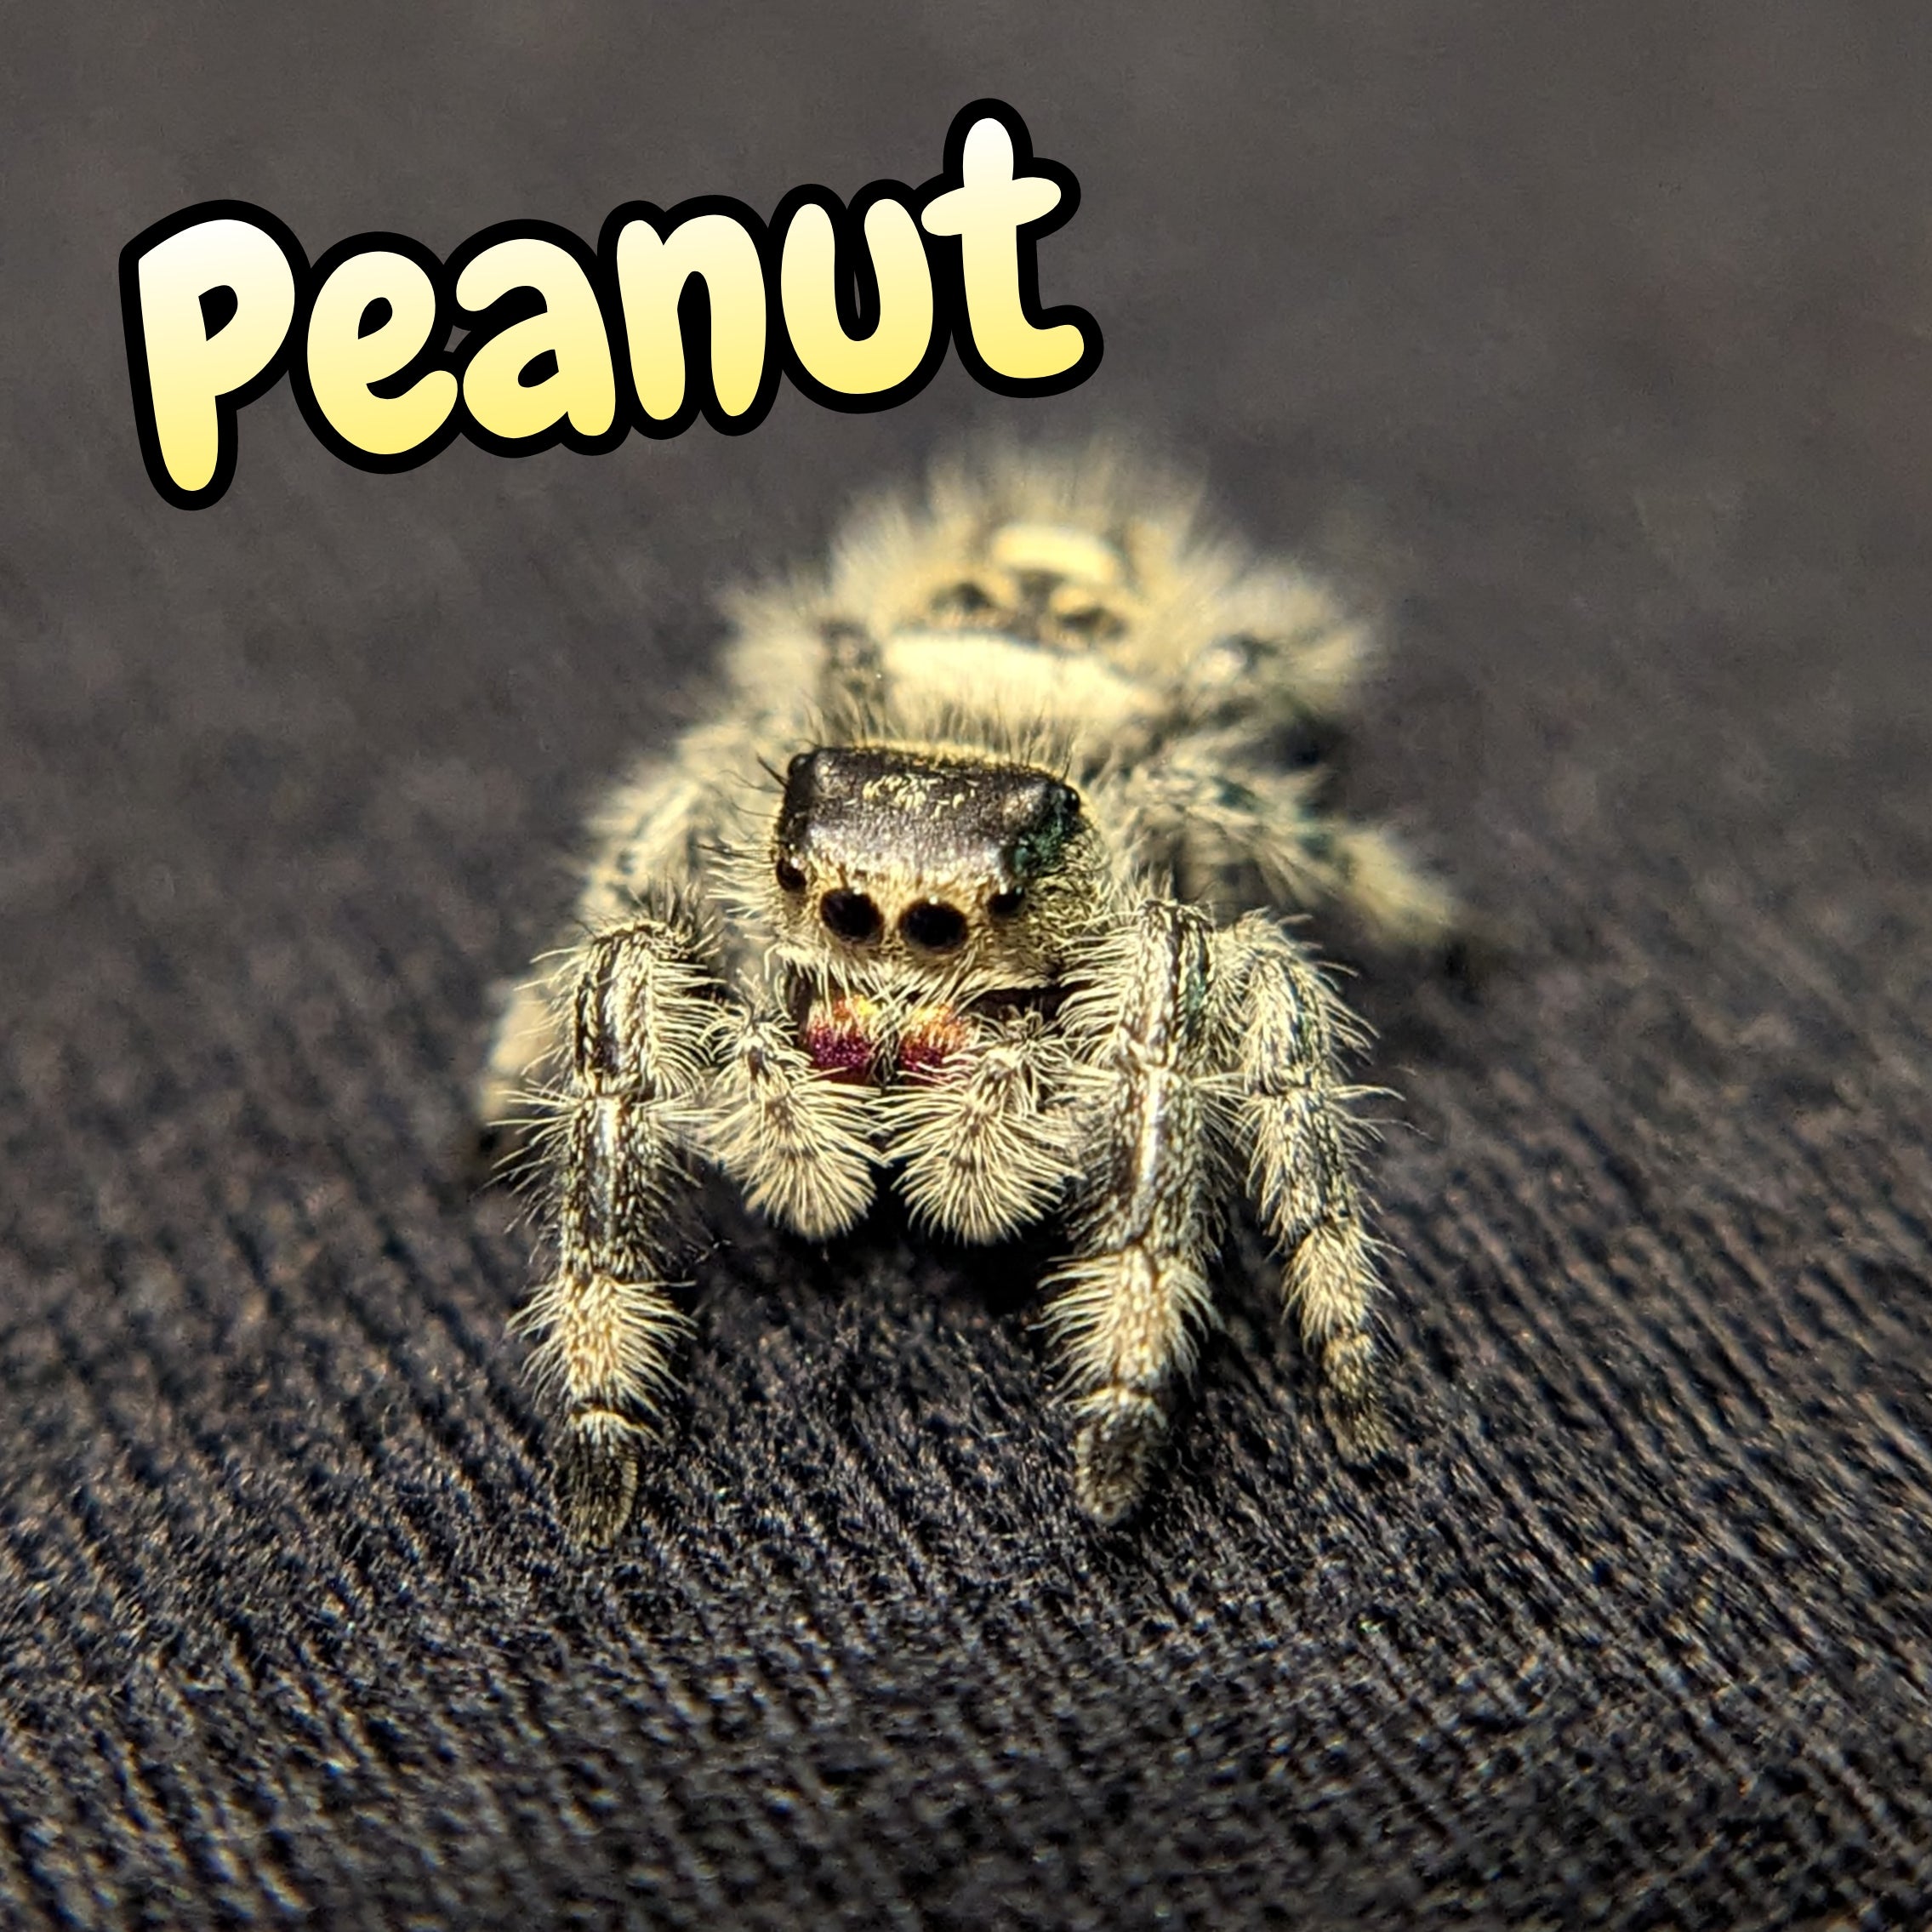 Regal Jumping Spider "Peanut"